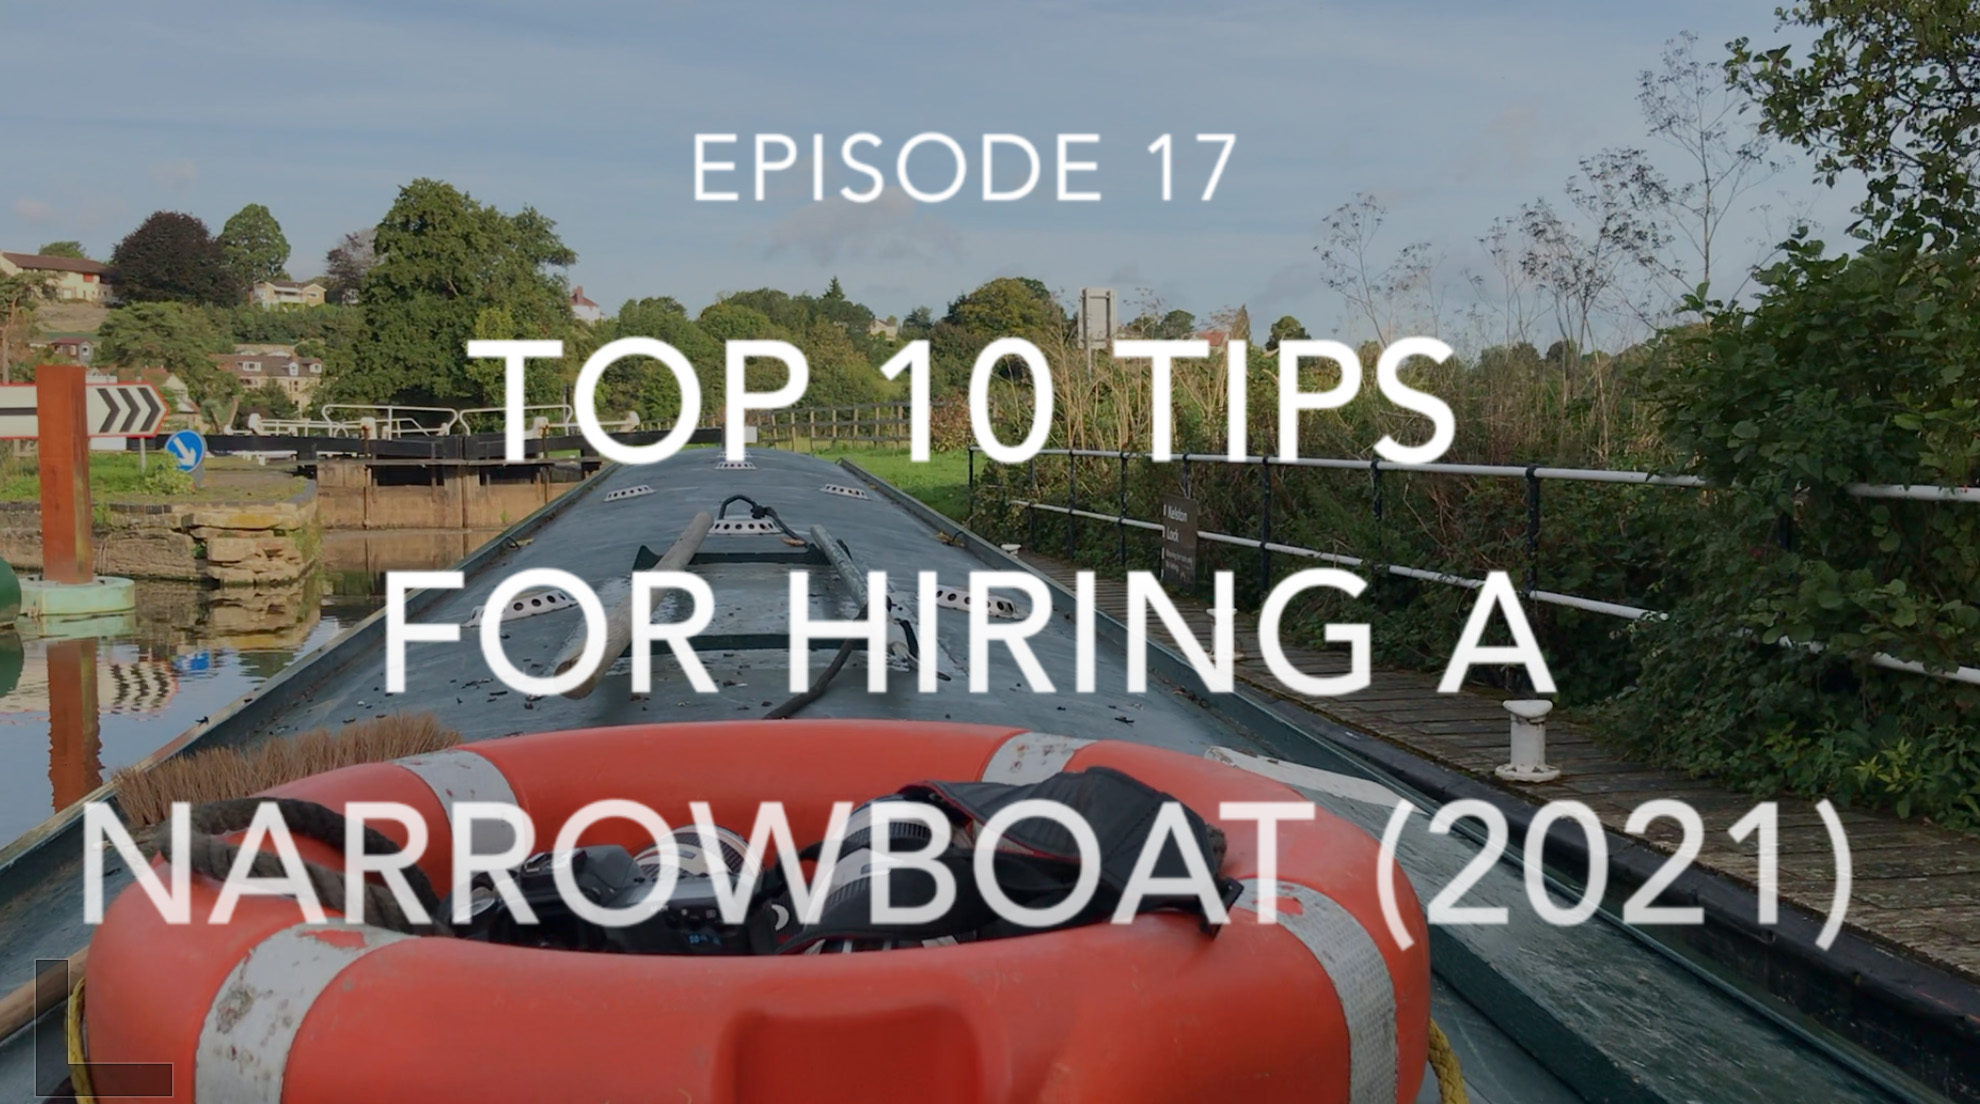 Top 10 Tips When Hiring a Narrowboat (2021)